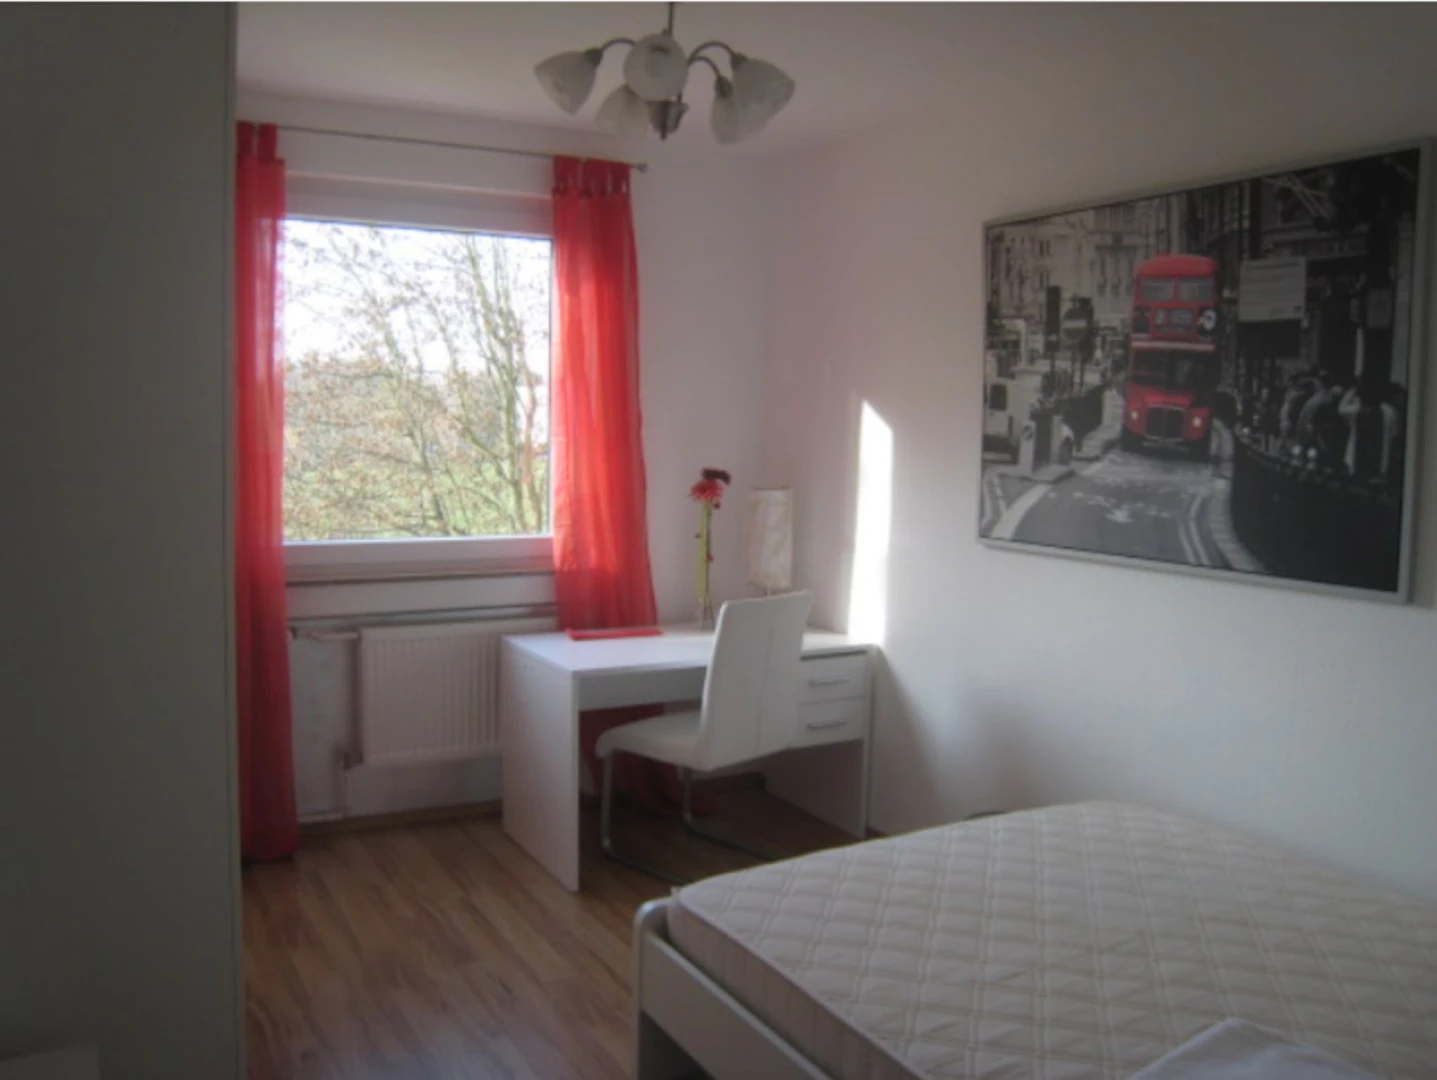 Alquiler de habitación en piso compartido en Eschborn